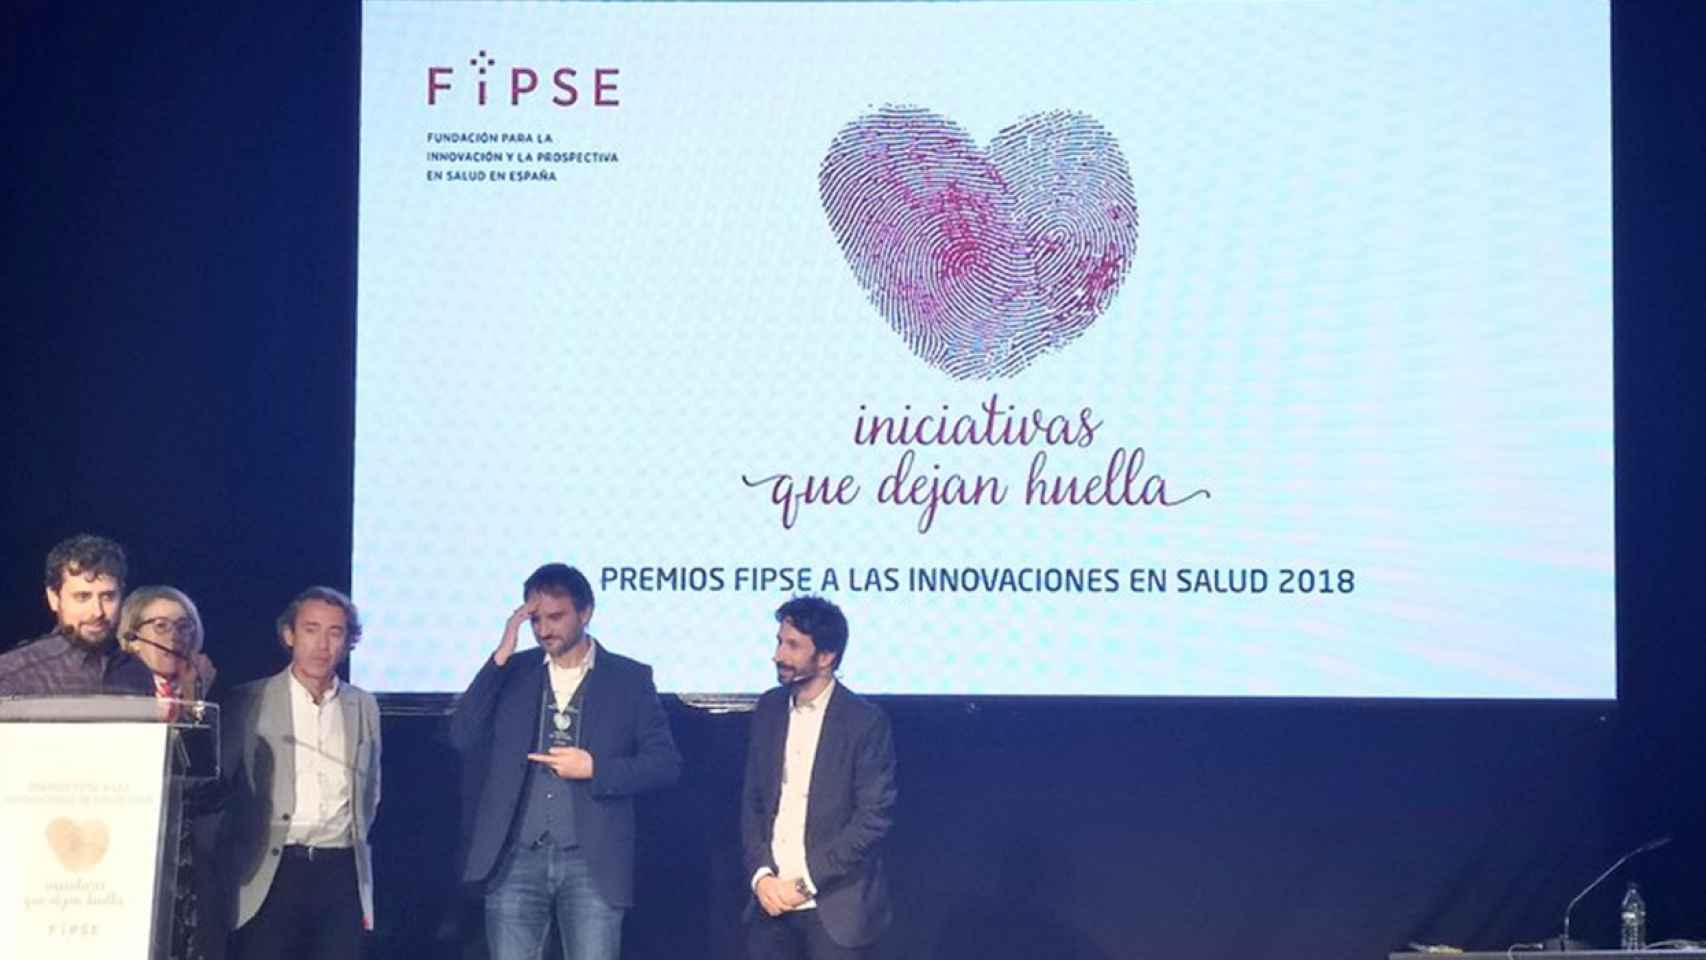 Ganadores de los Premios FIPSE a las innovaciones en salud 2018.